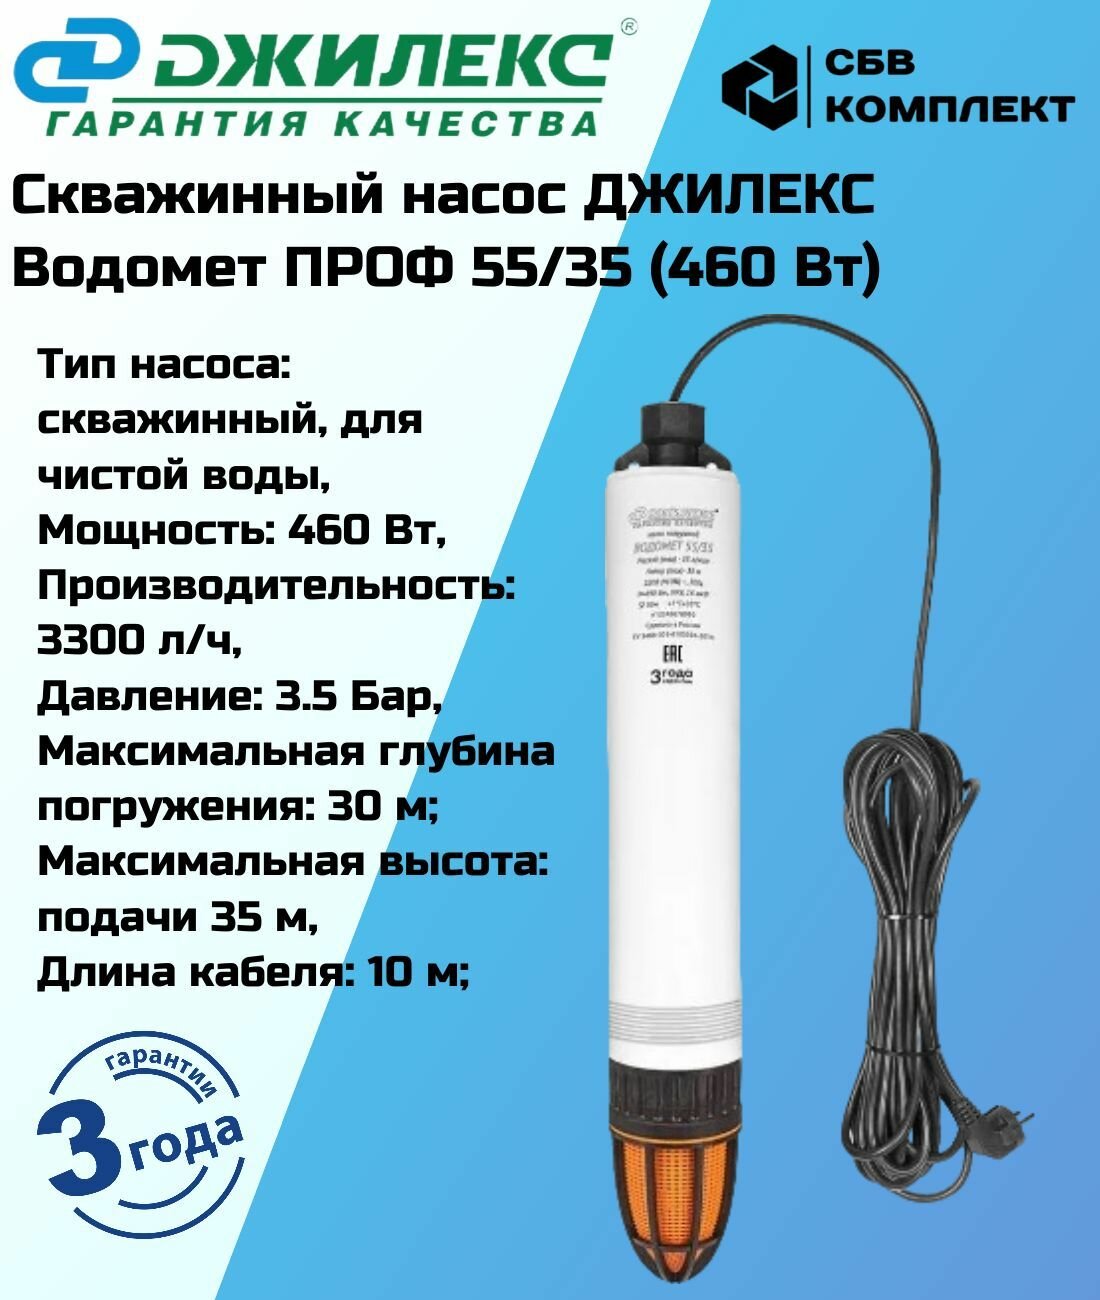 Скважинный насос ДЖИЛЕКС Водомет ПРОФ 55/35 (460 Вт)